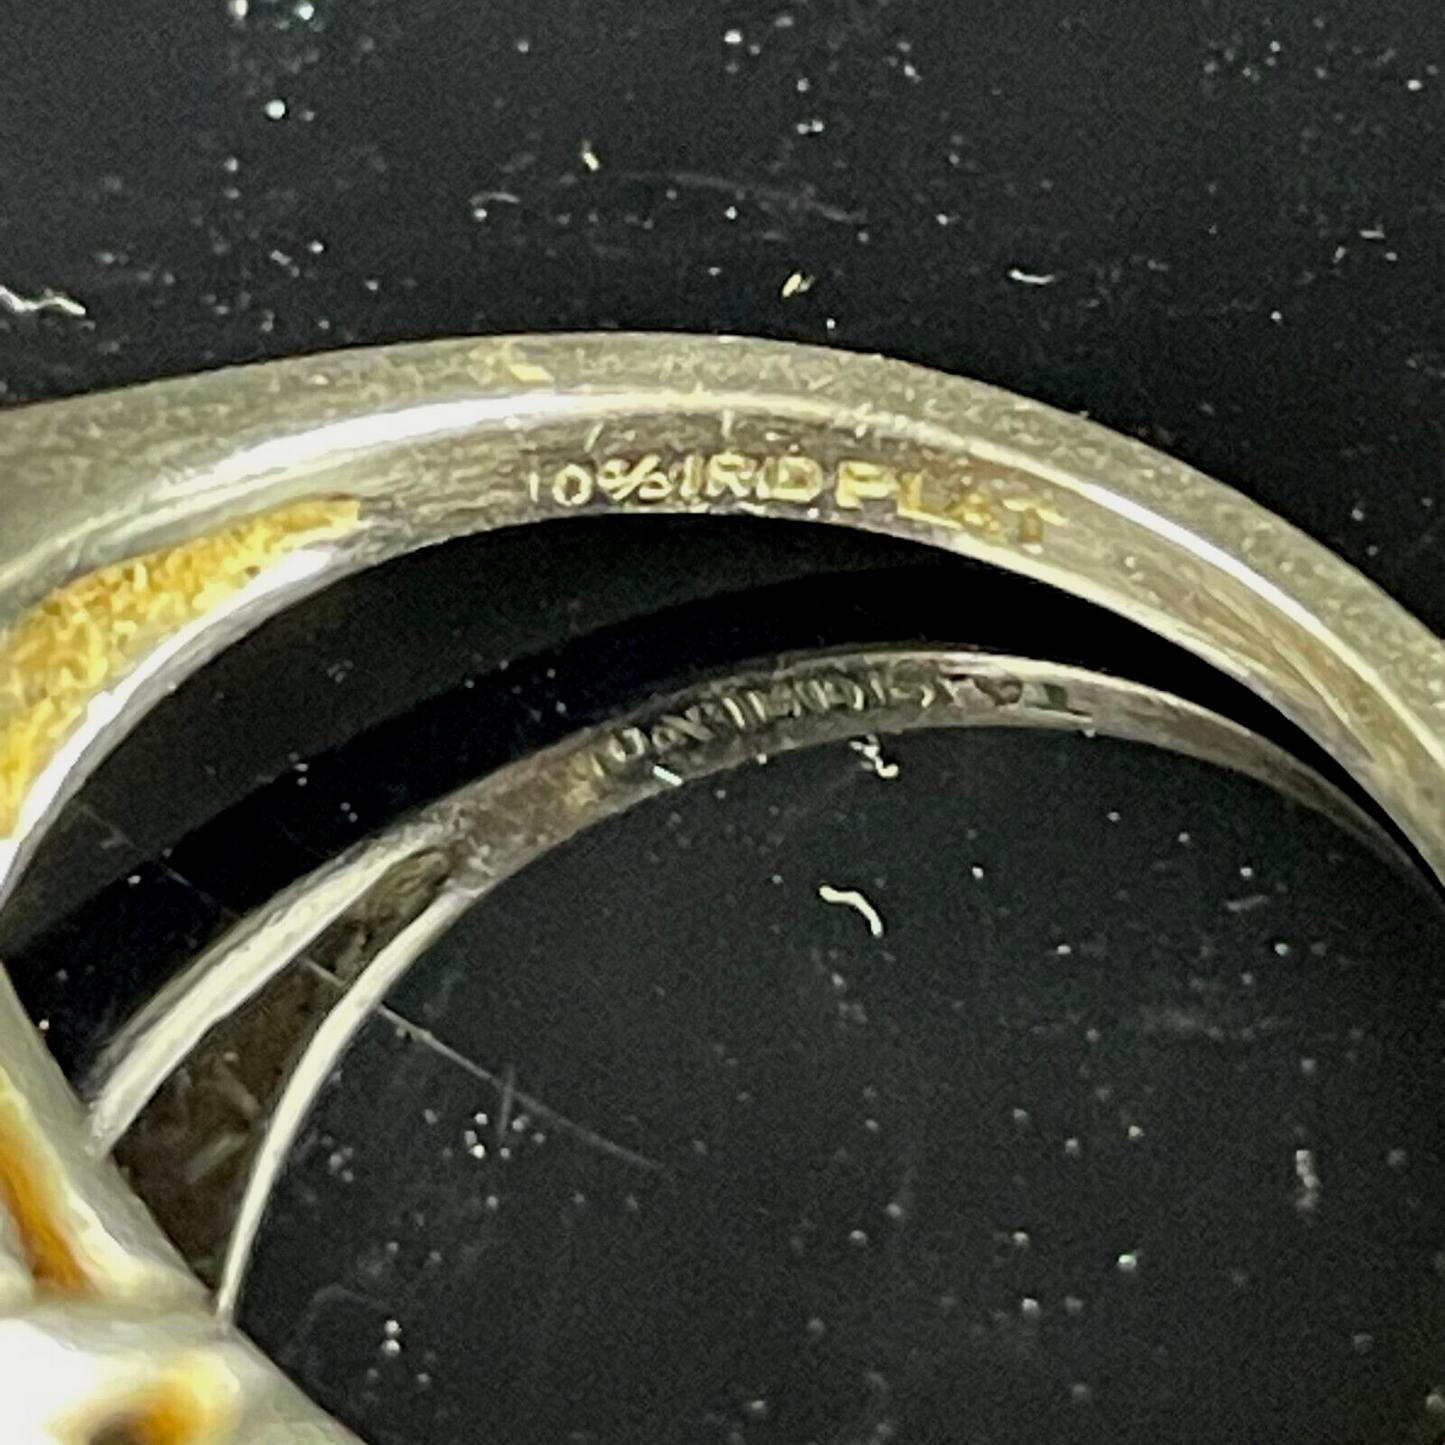 Rare 90% Platinum 10% Iridium Unique Art Deco Flat Oval Opal Ring